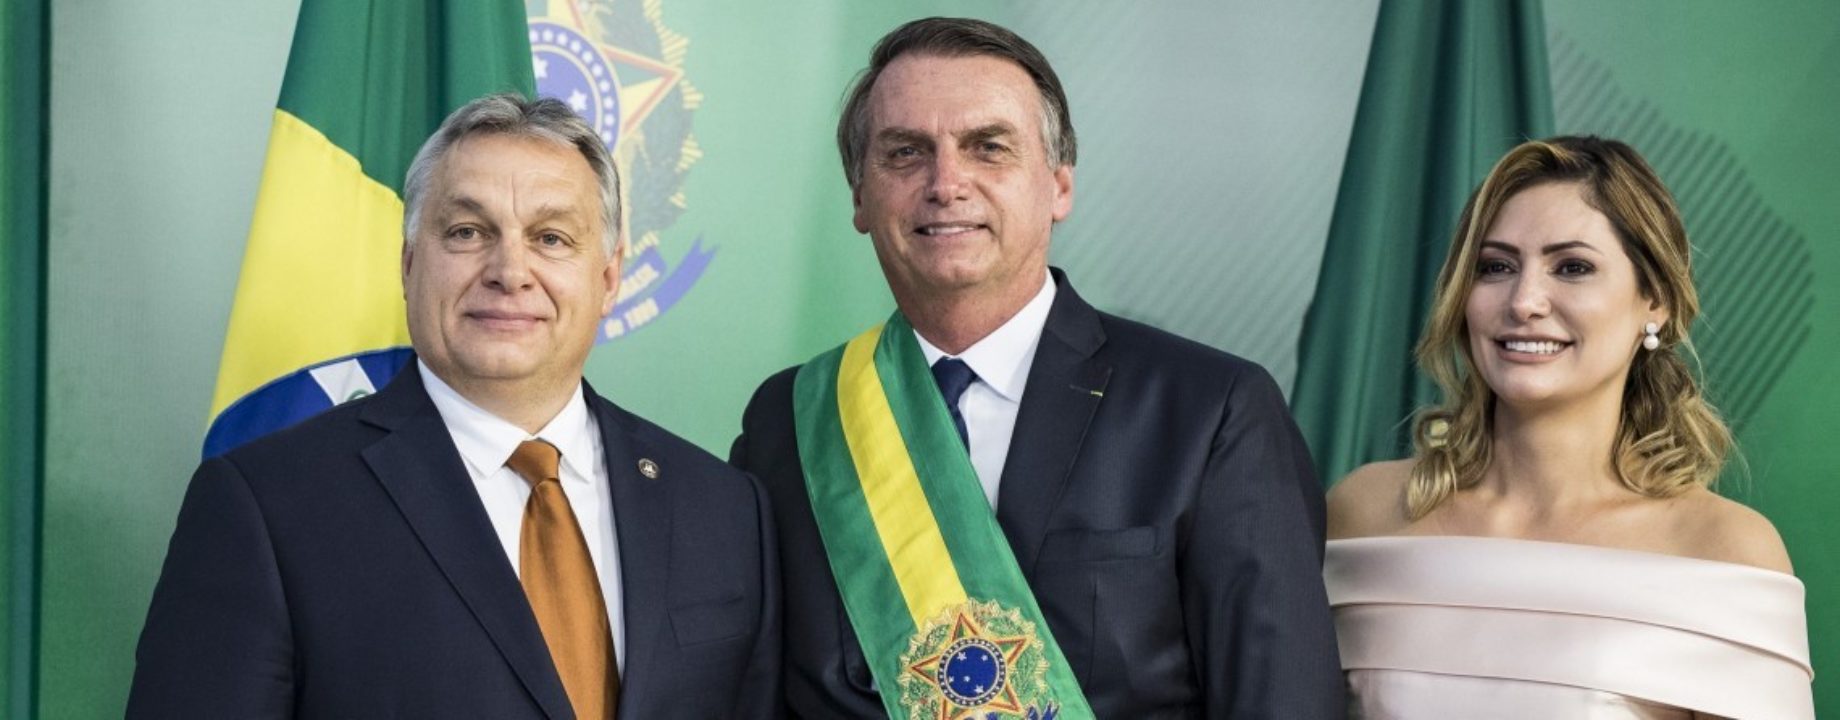 Orbán bolsonaro infostart